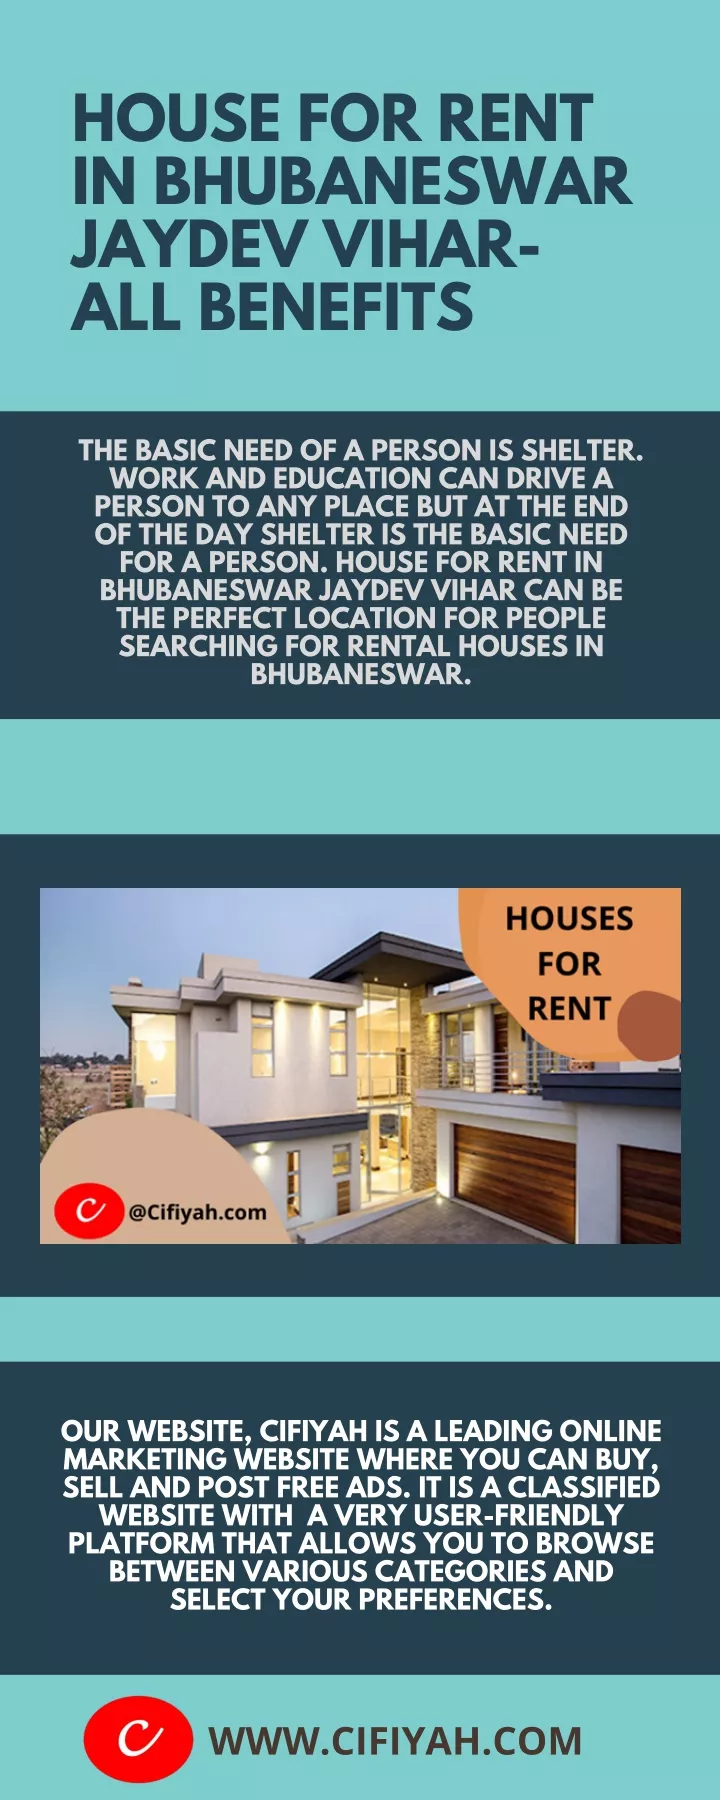 house for rent in bhubaneswar jaydev vihar